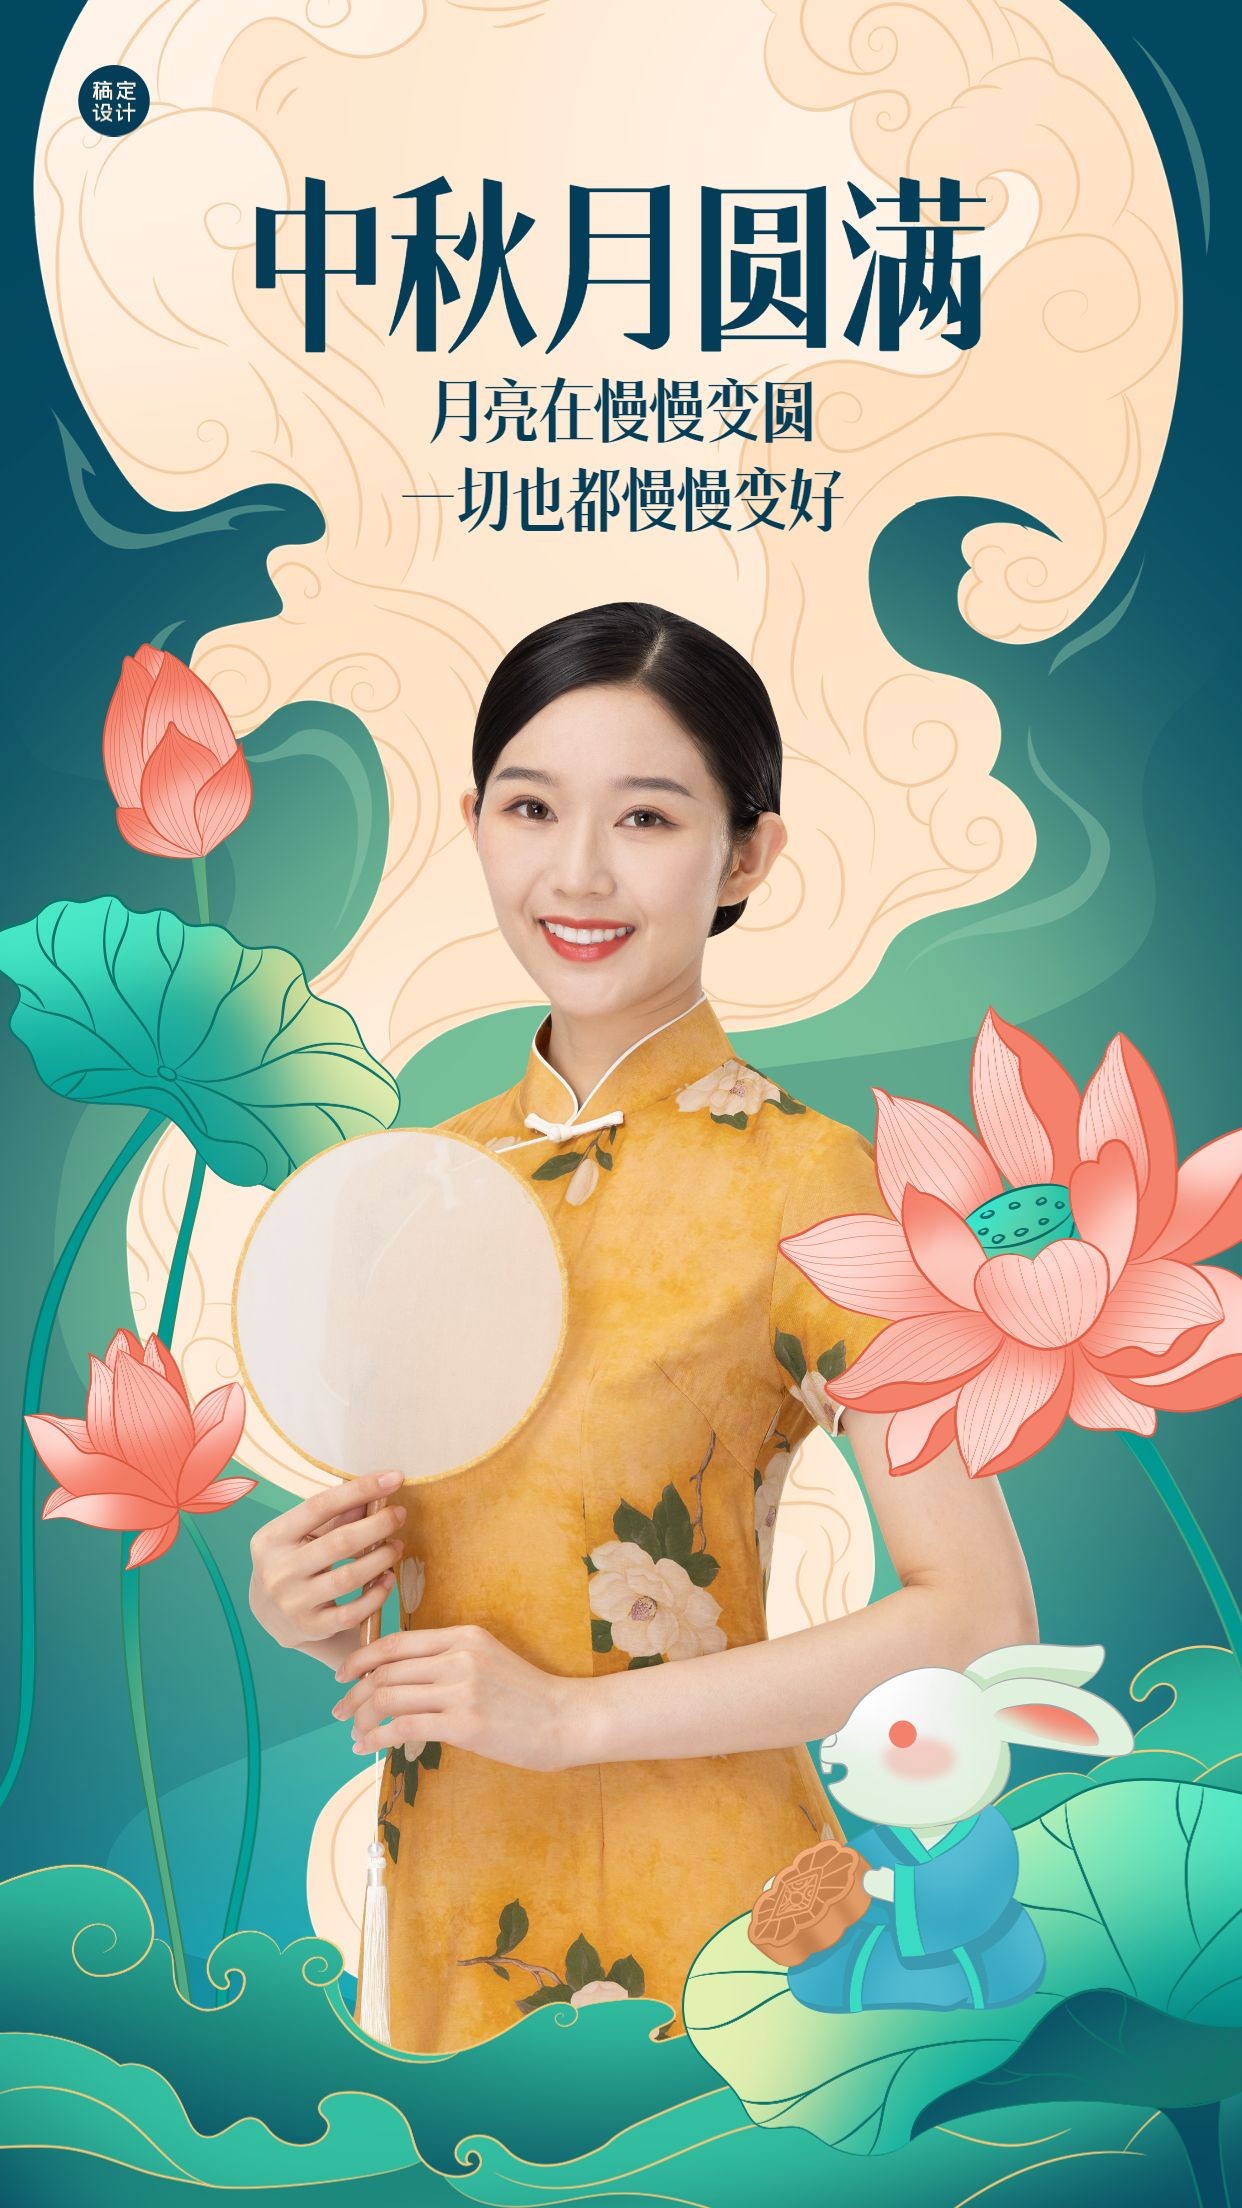 中秋节节日问候祝福晒图晒照中国风手机海报